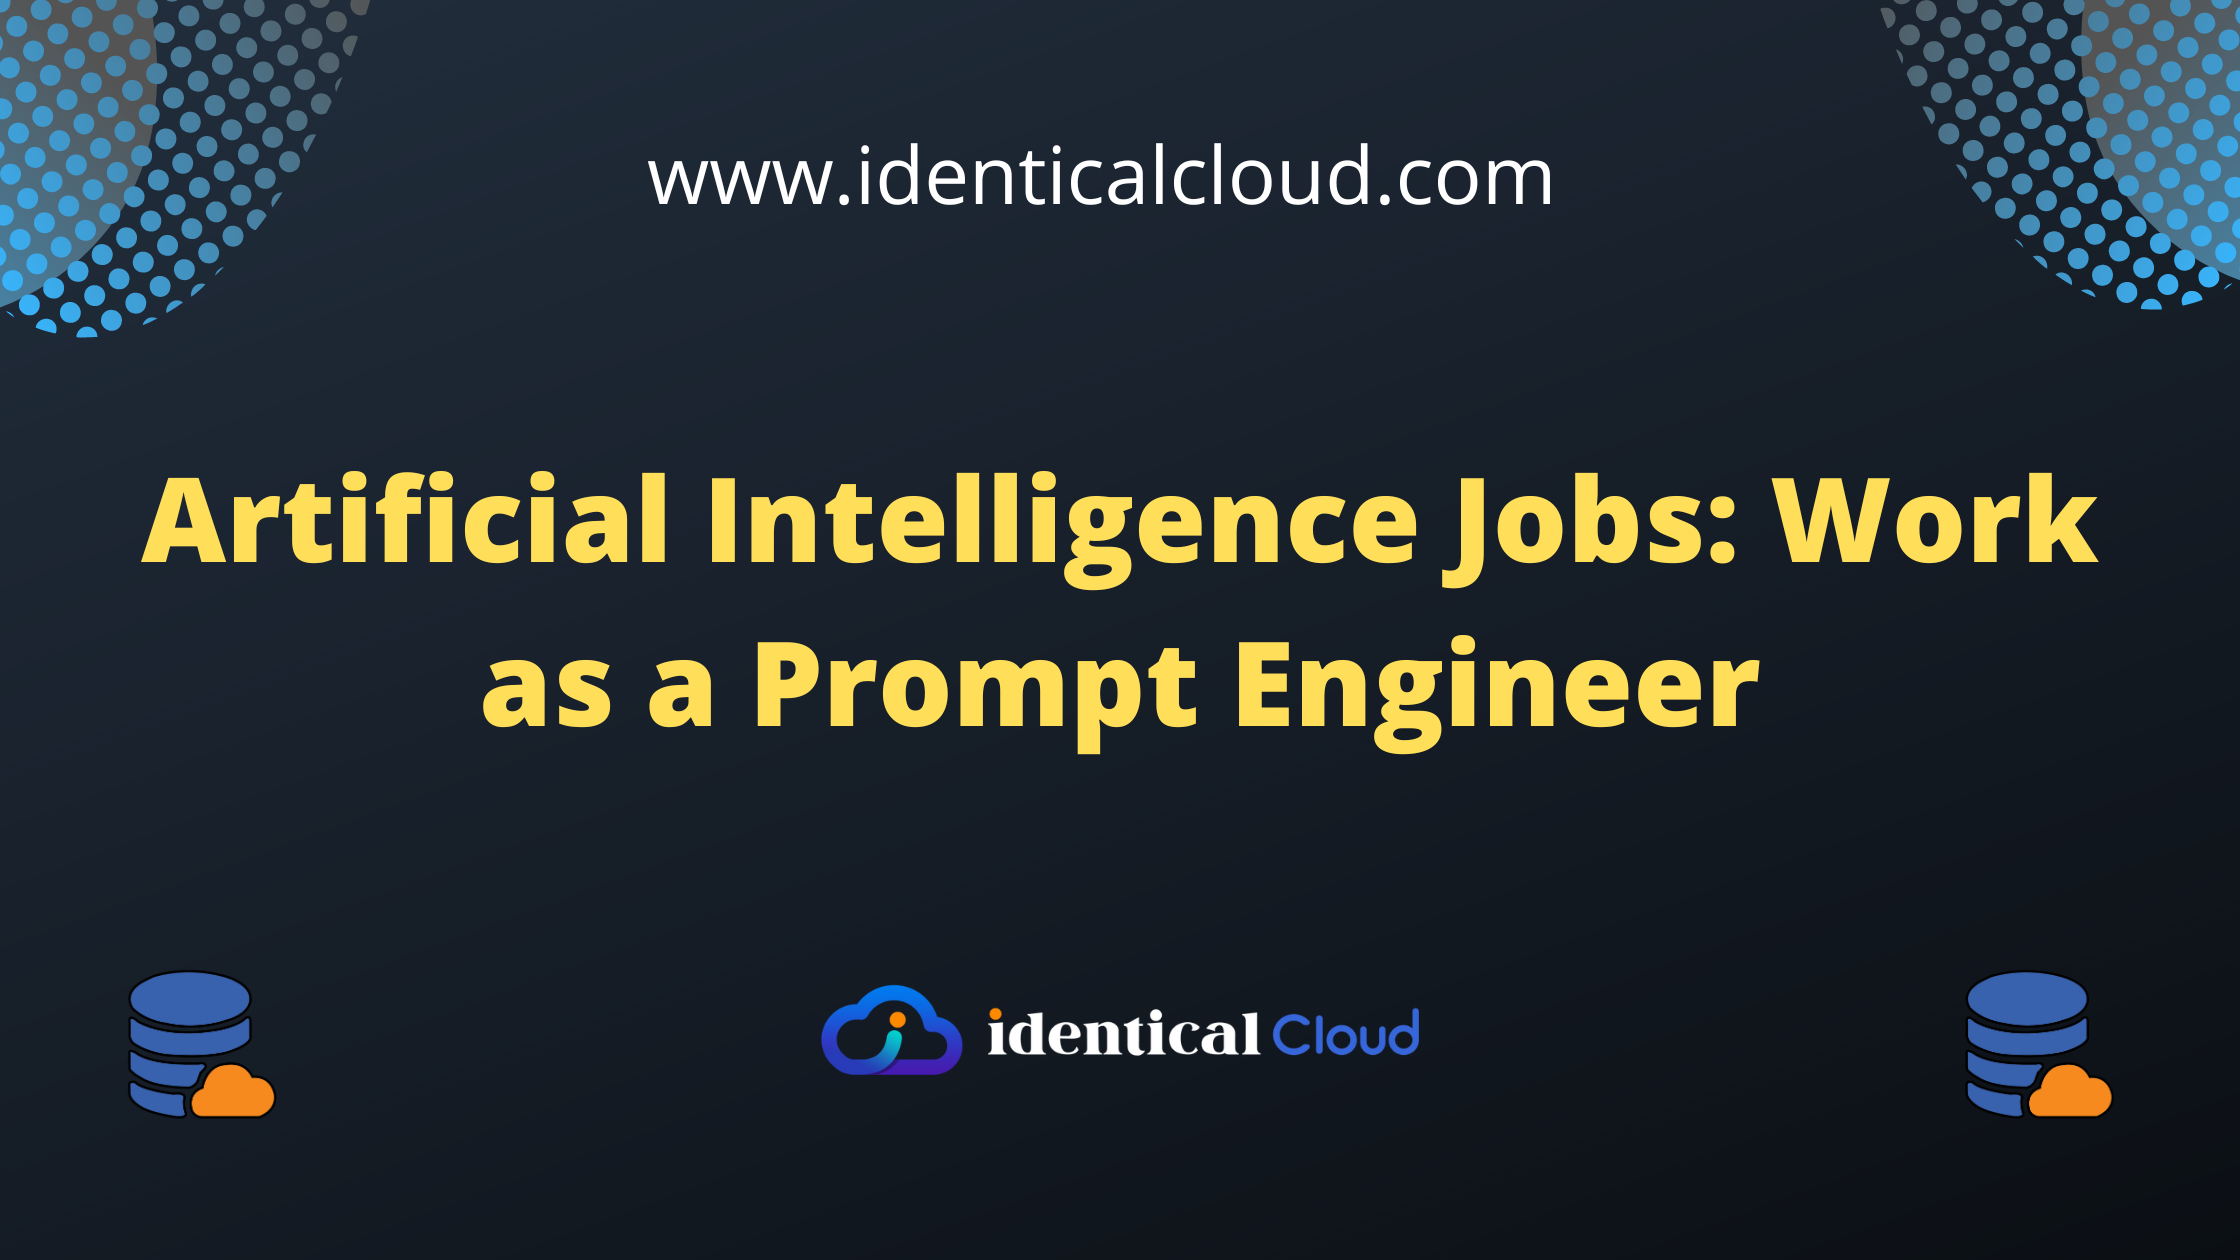 Artificial Intelligence Jobs - identicalcloud.com